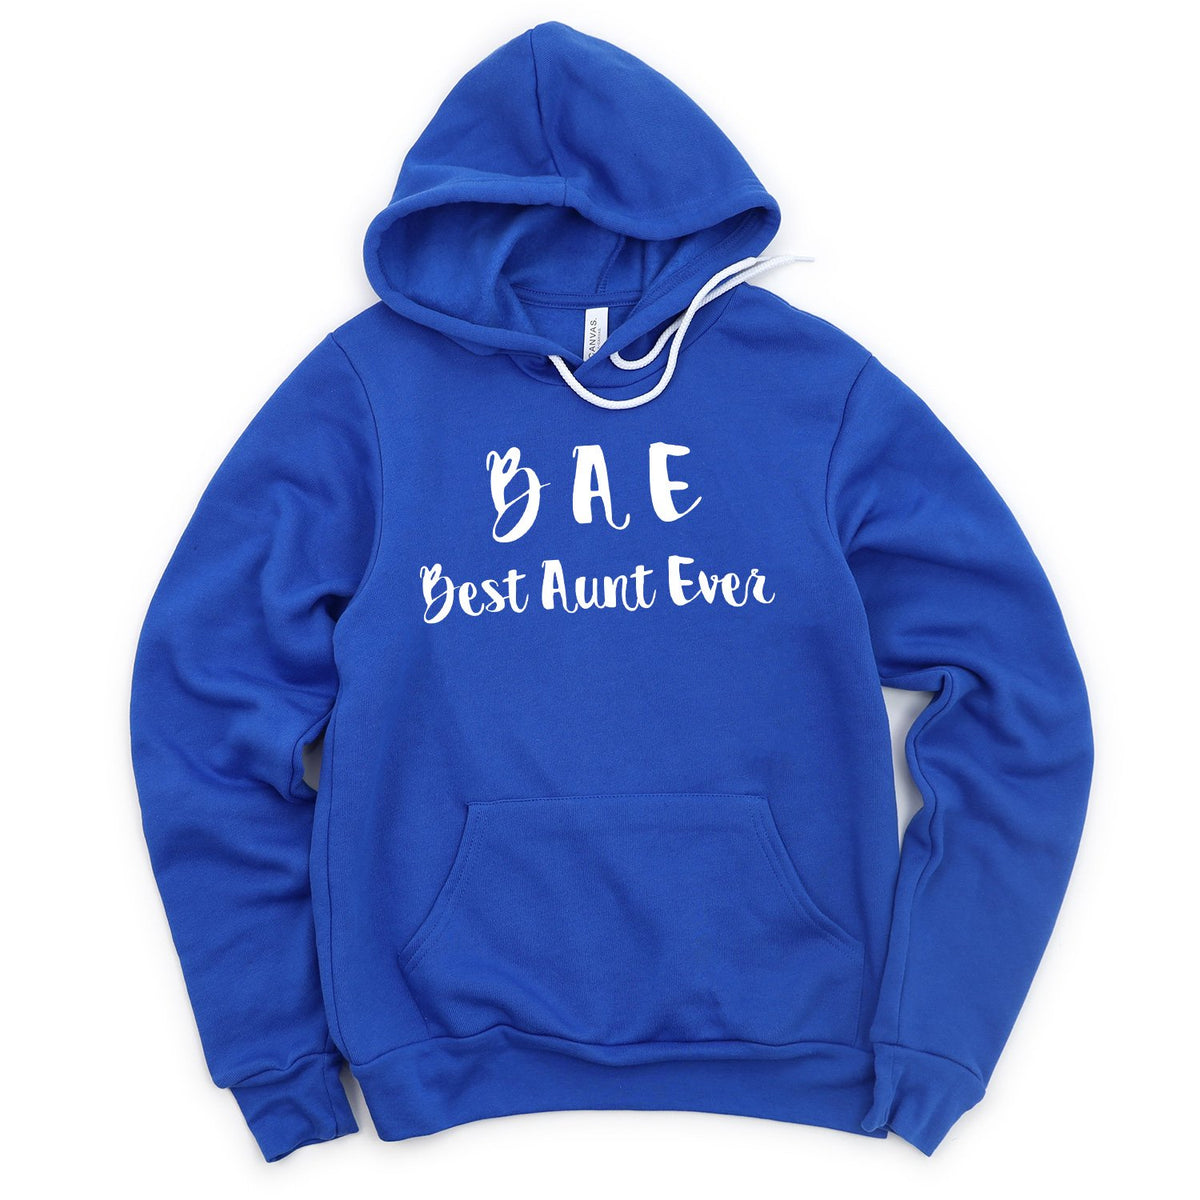 BAE Best Aunt Ever - Hoodie Sweatshirt